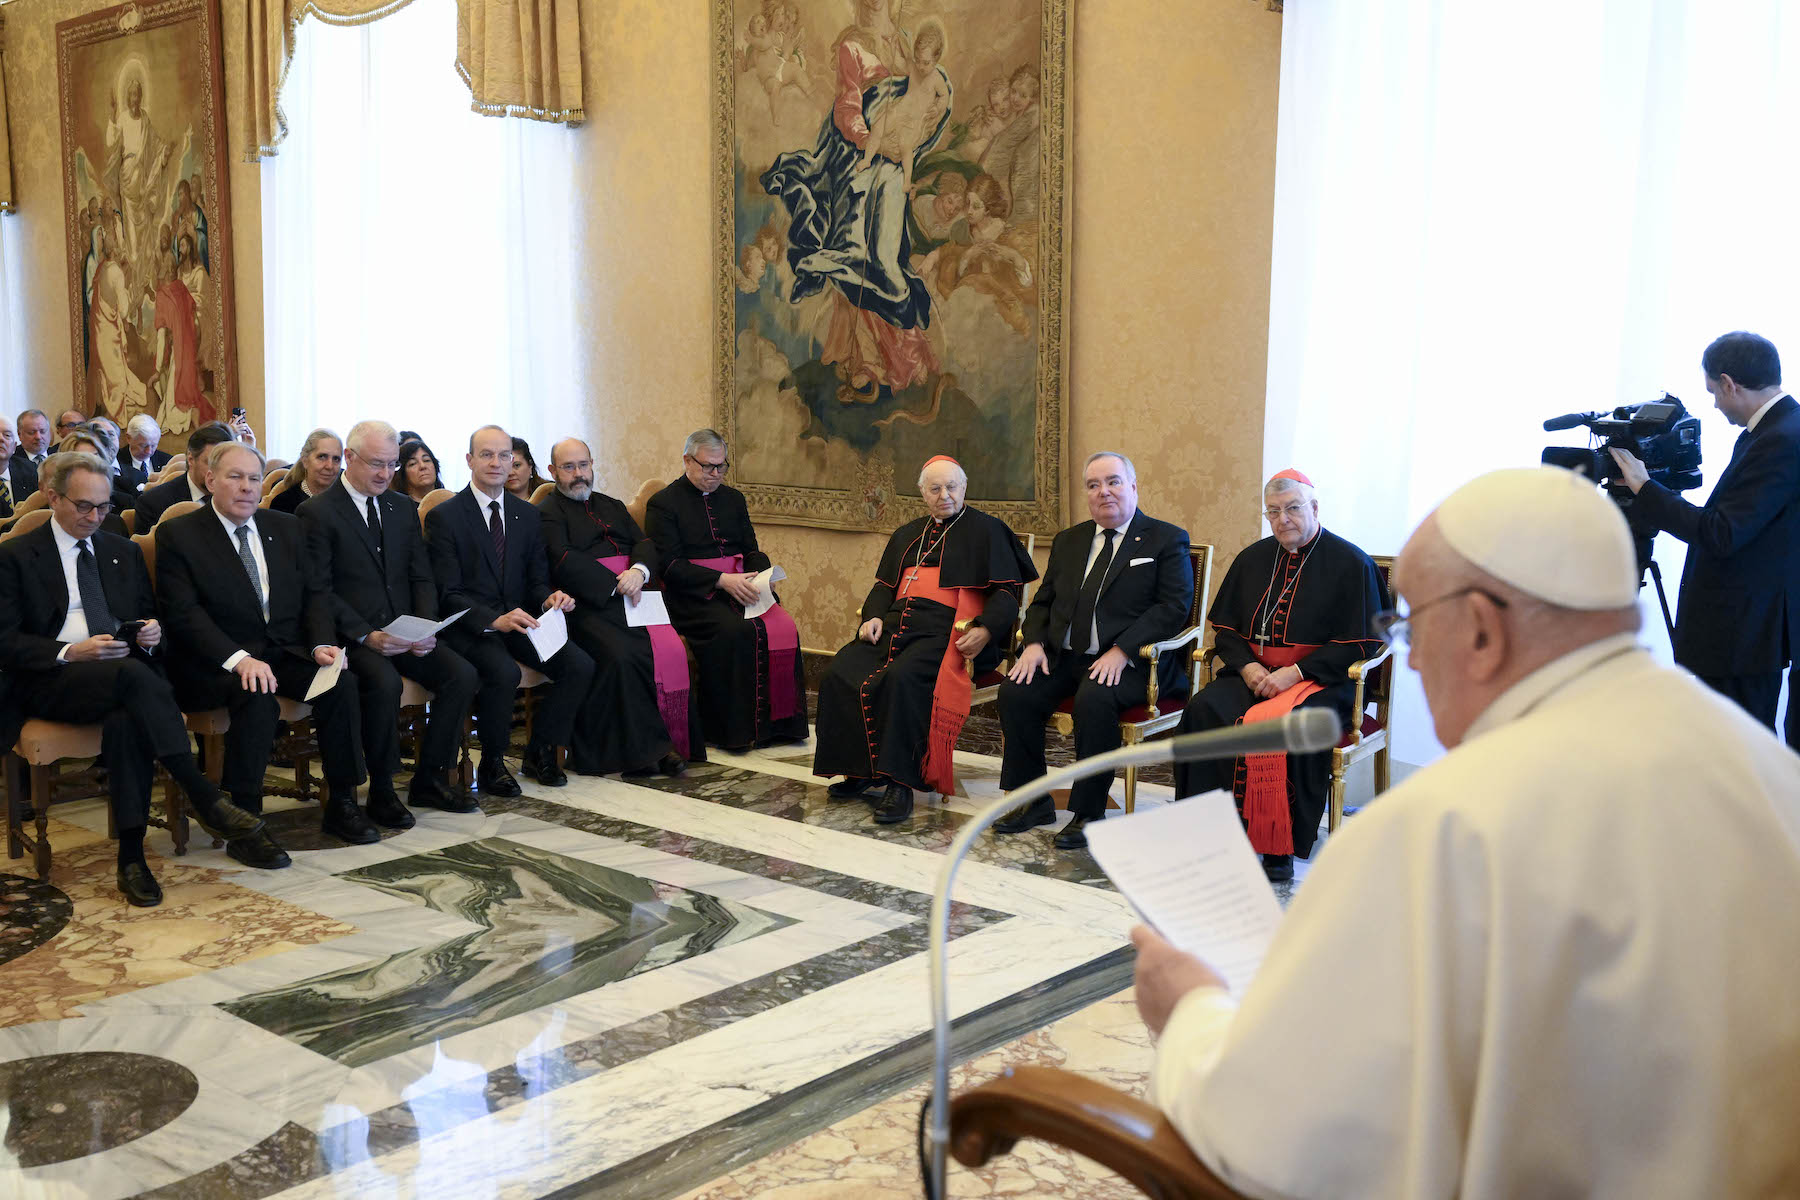 Audienz beim Heiligen Vater eröffnet den letzten Tag der Botschafterkonferenz des Malteserordens